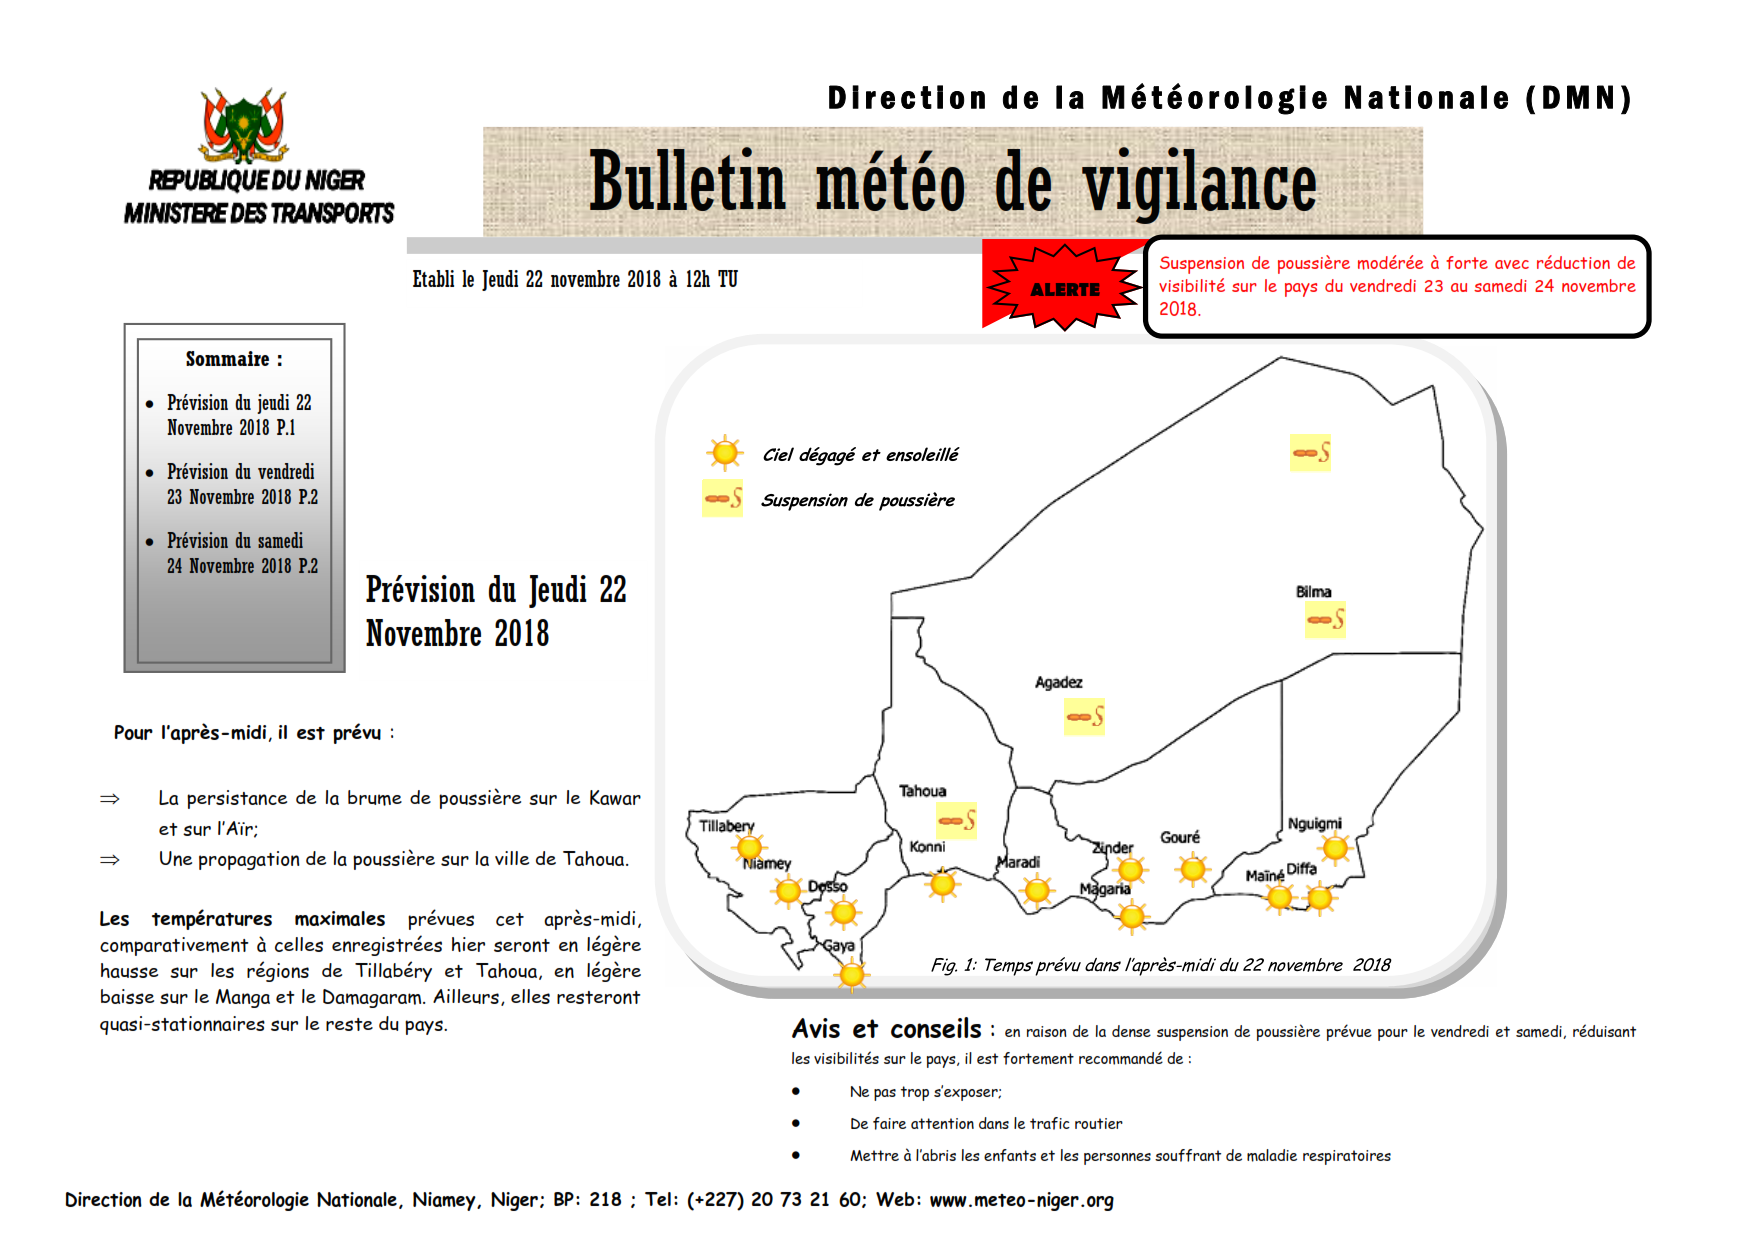 Bulletin météo de vigilance du 22 novembre 2018 sur le Niger pour les prochaines 24 heures.
Élaboré par la Direction de la Météorologie Nationale du Niger.
